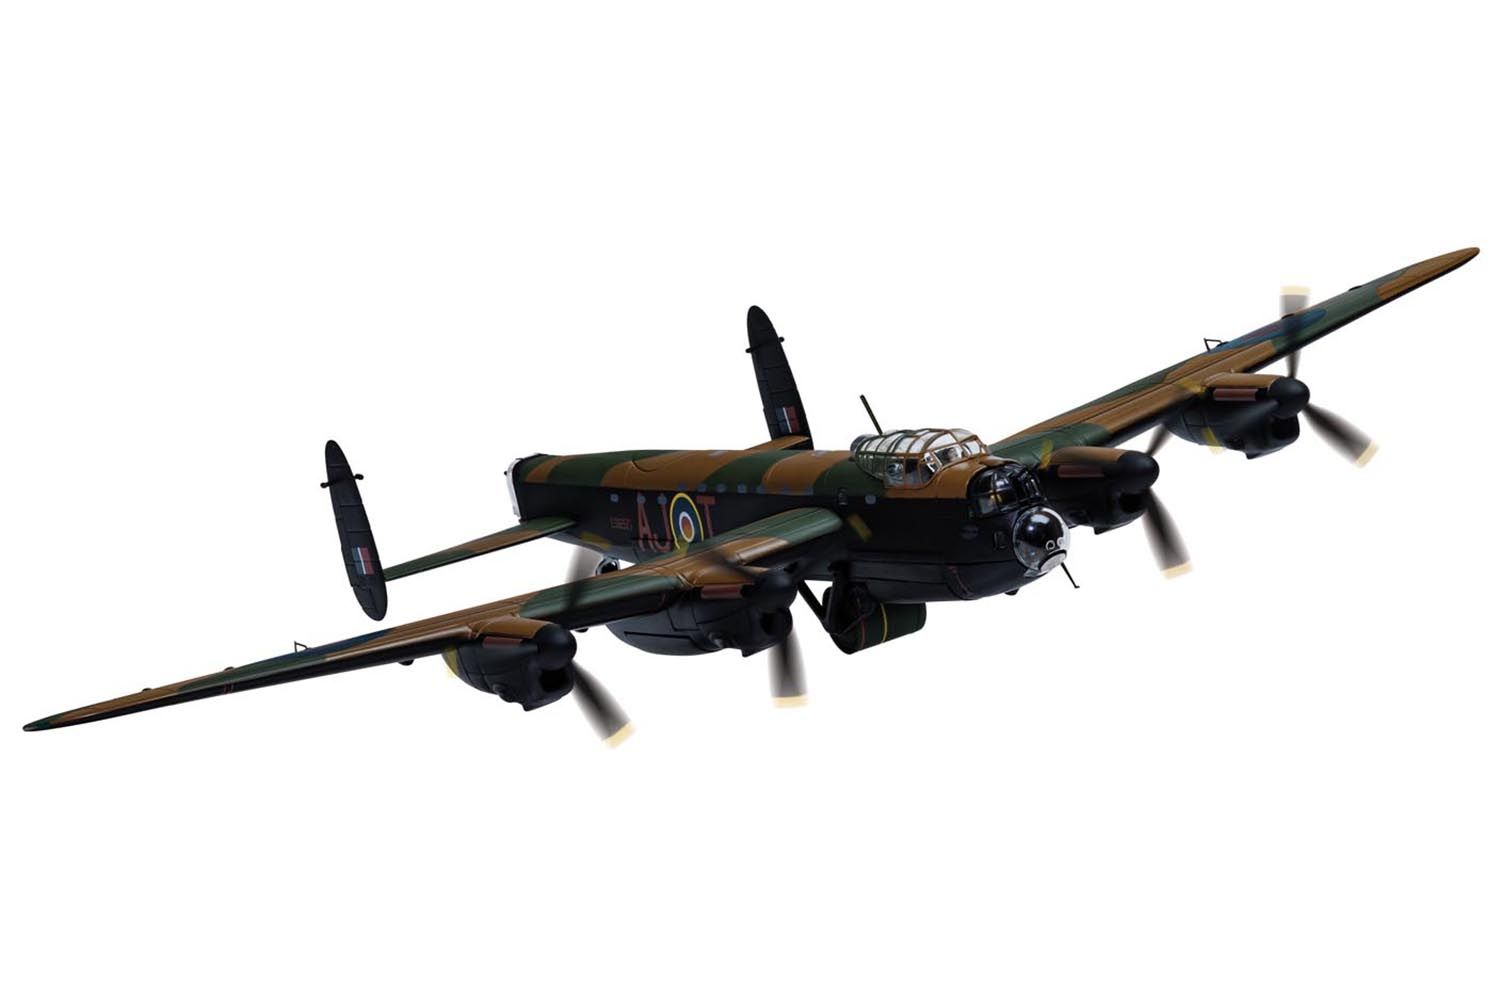 HVCCG0002 Corgi Jigsaw Puzzle - Avro Lancaster B.I